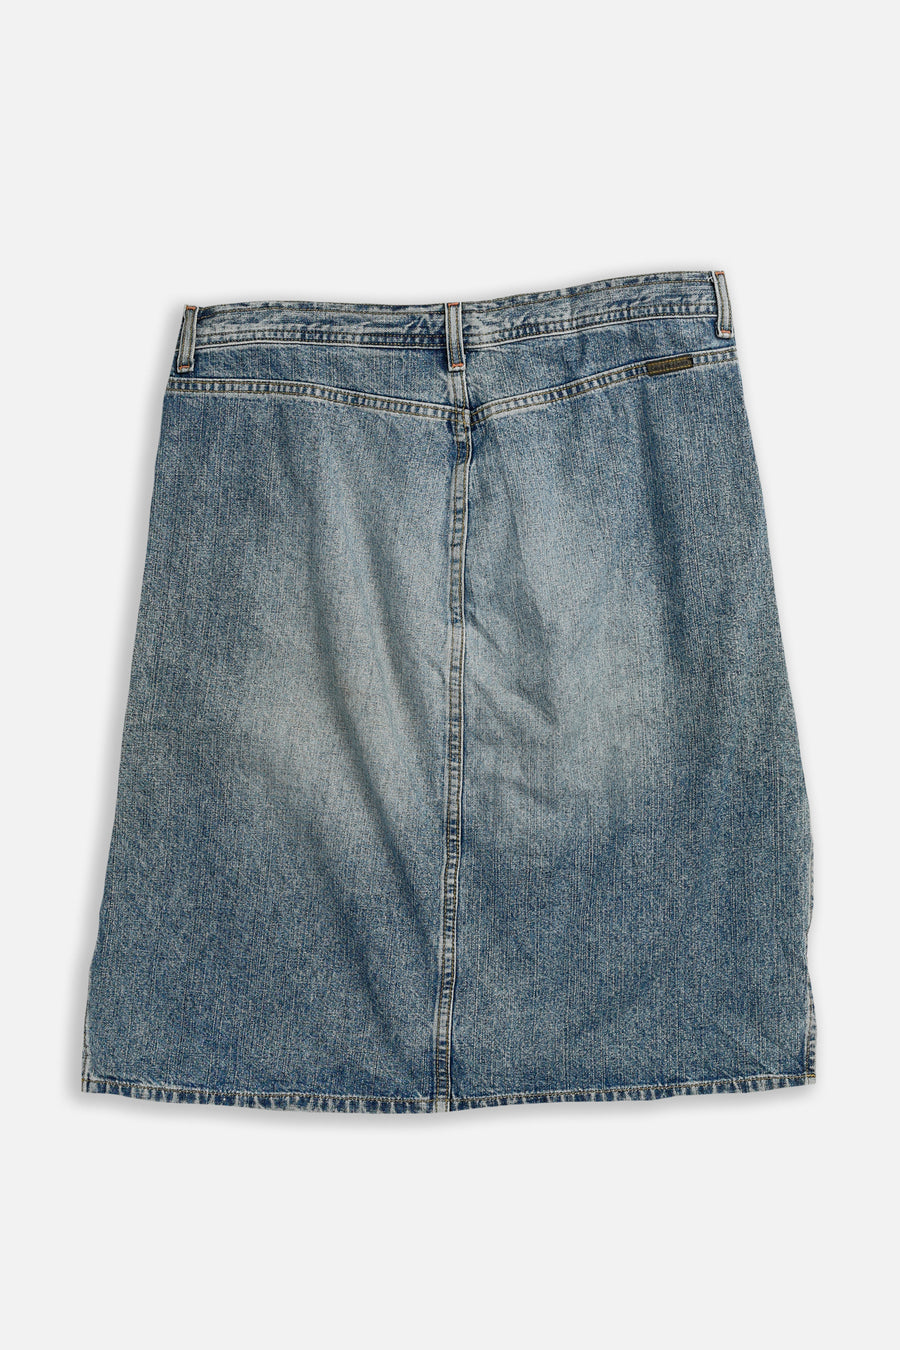 Vintage Calvin Klein Denim Skirt - W34